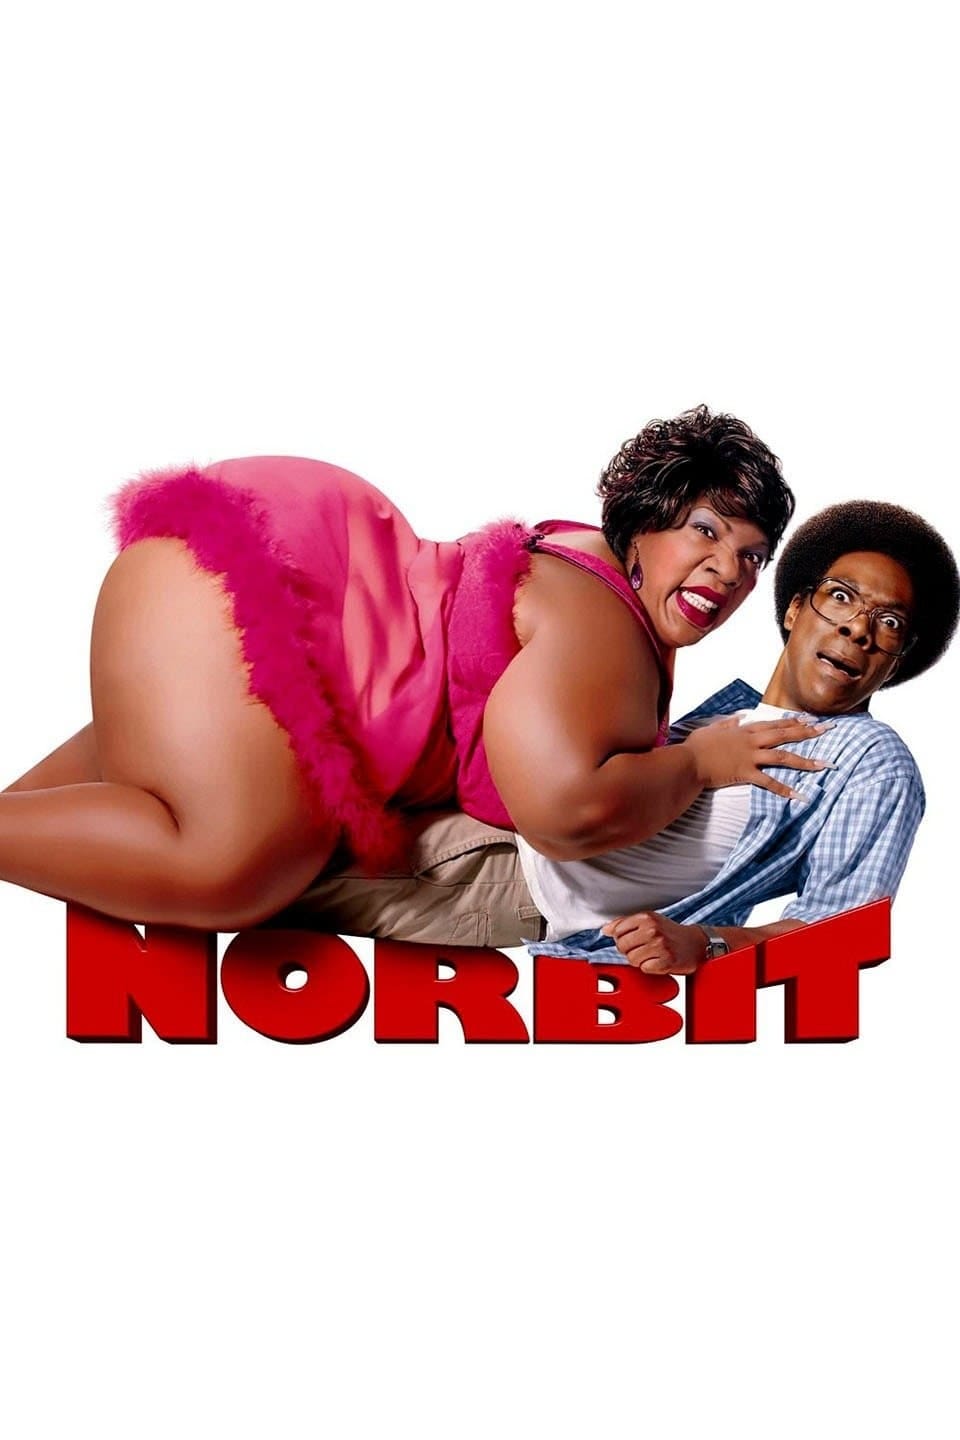 Norbit (2007) | Poster